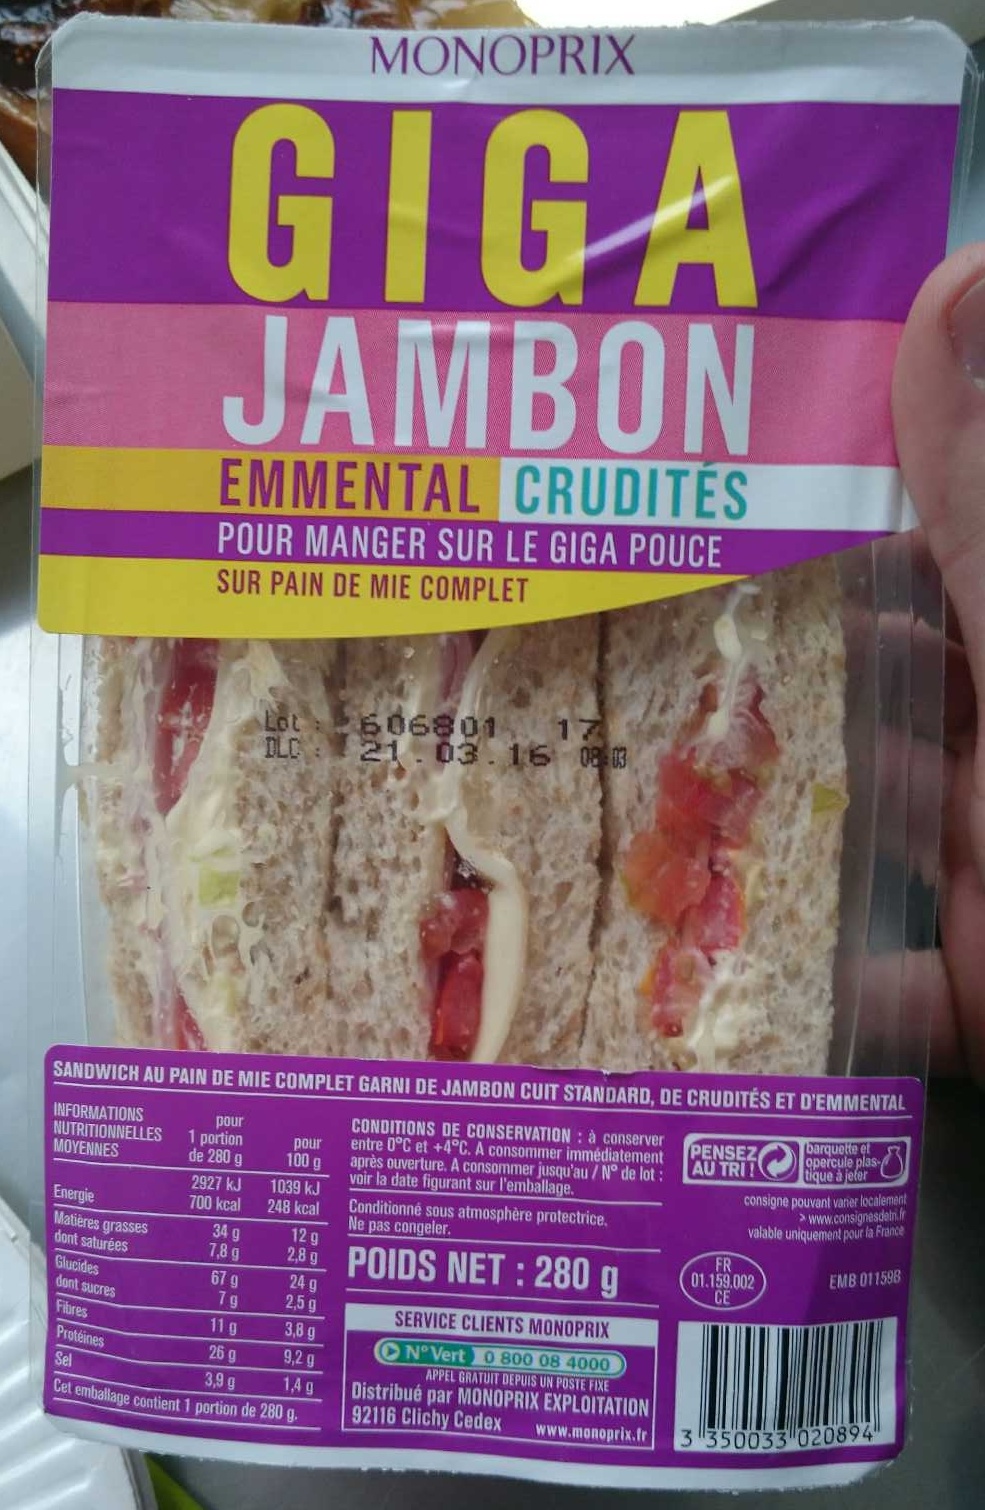 Giga jambon emmental crudités sur pain de mie complet - Product - fr